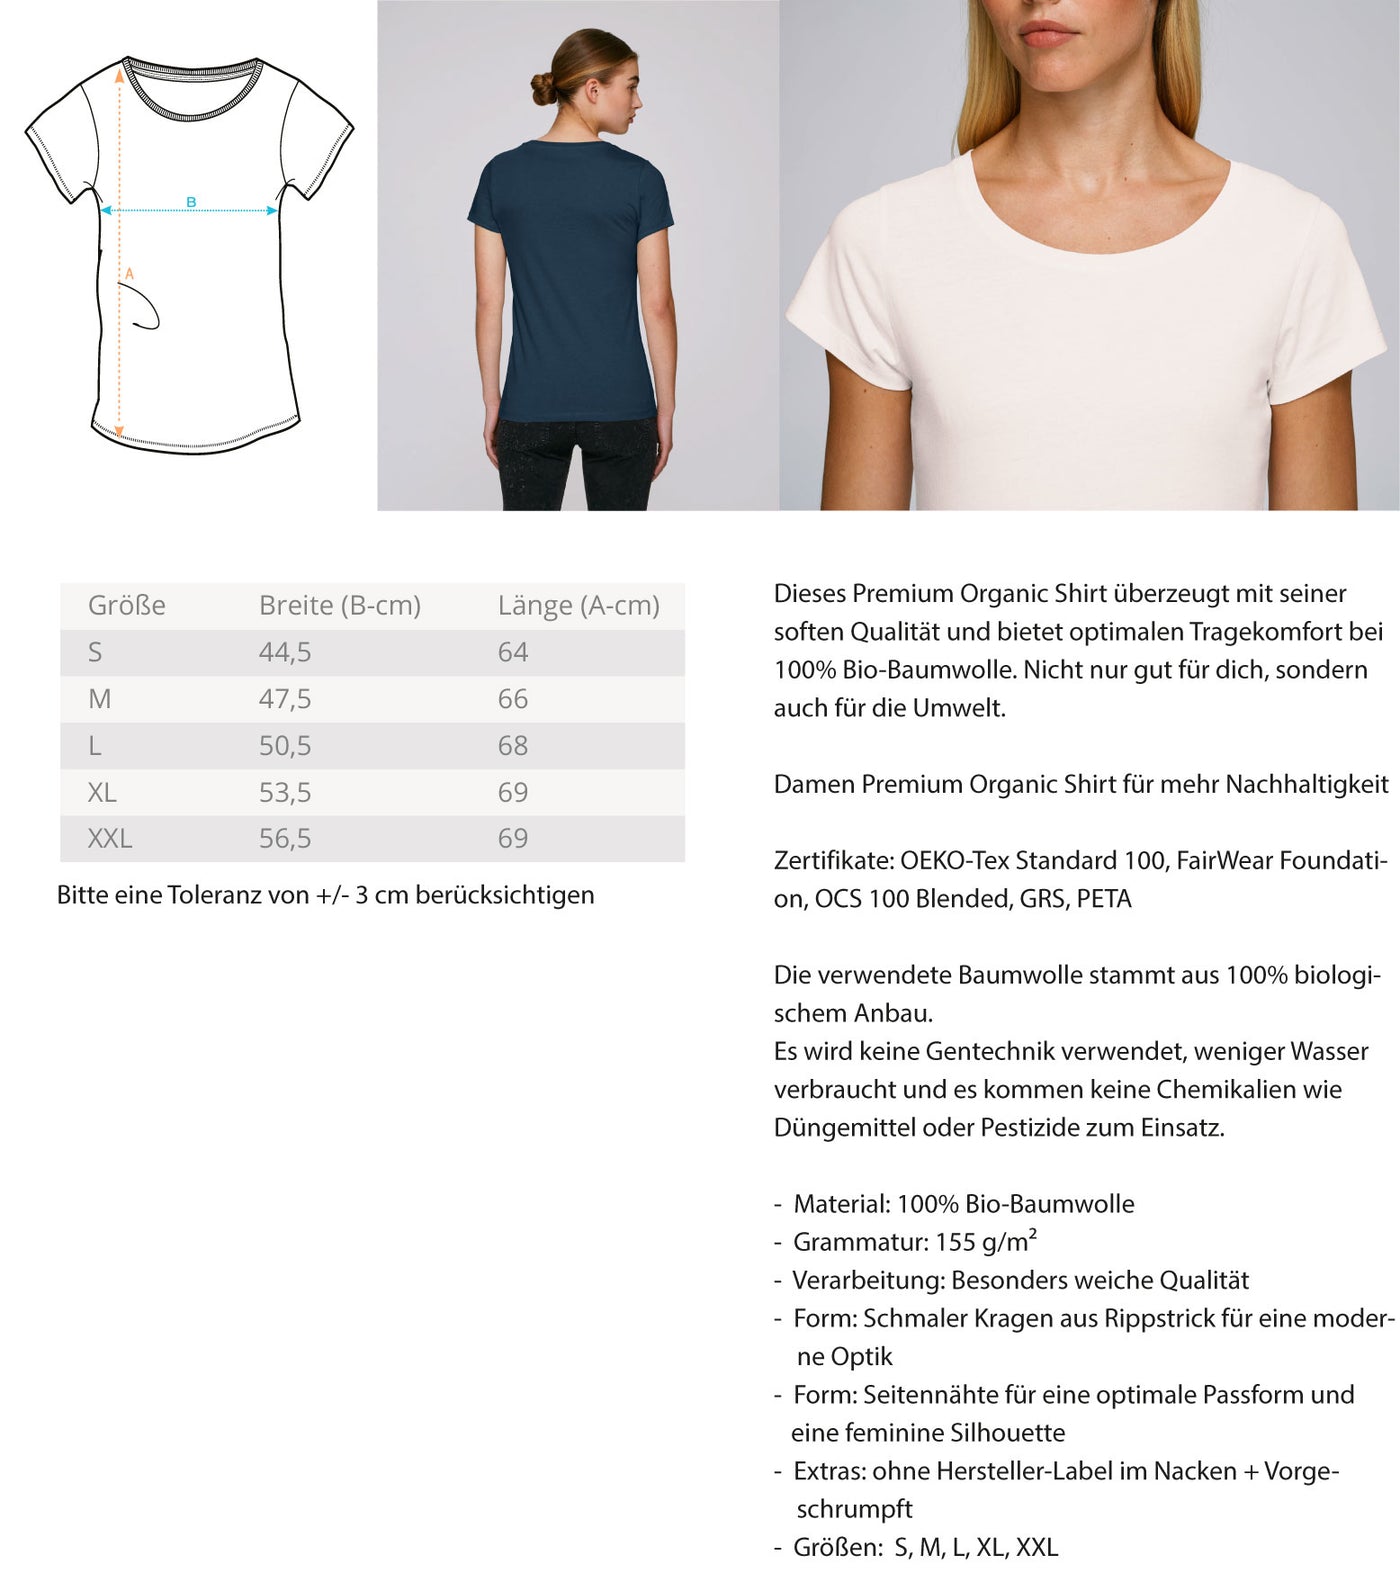 Alpenmädchen - Damen Premium Organic T-Shirt berge